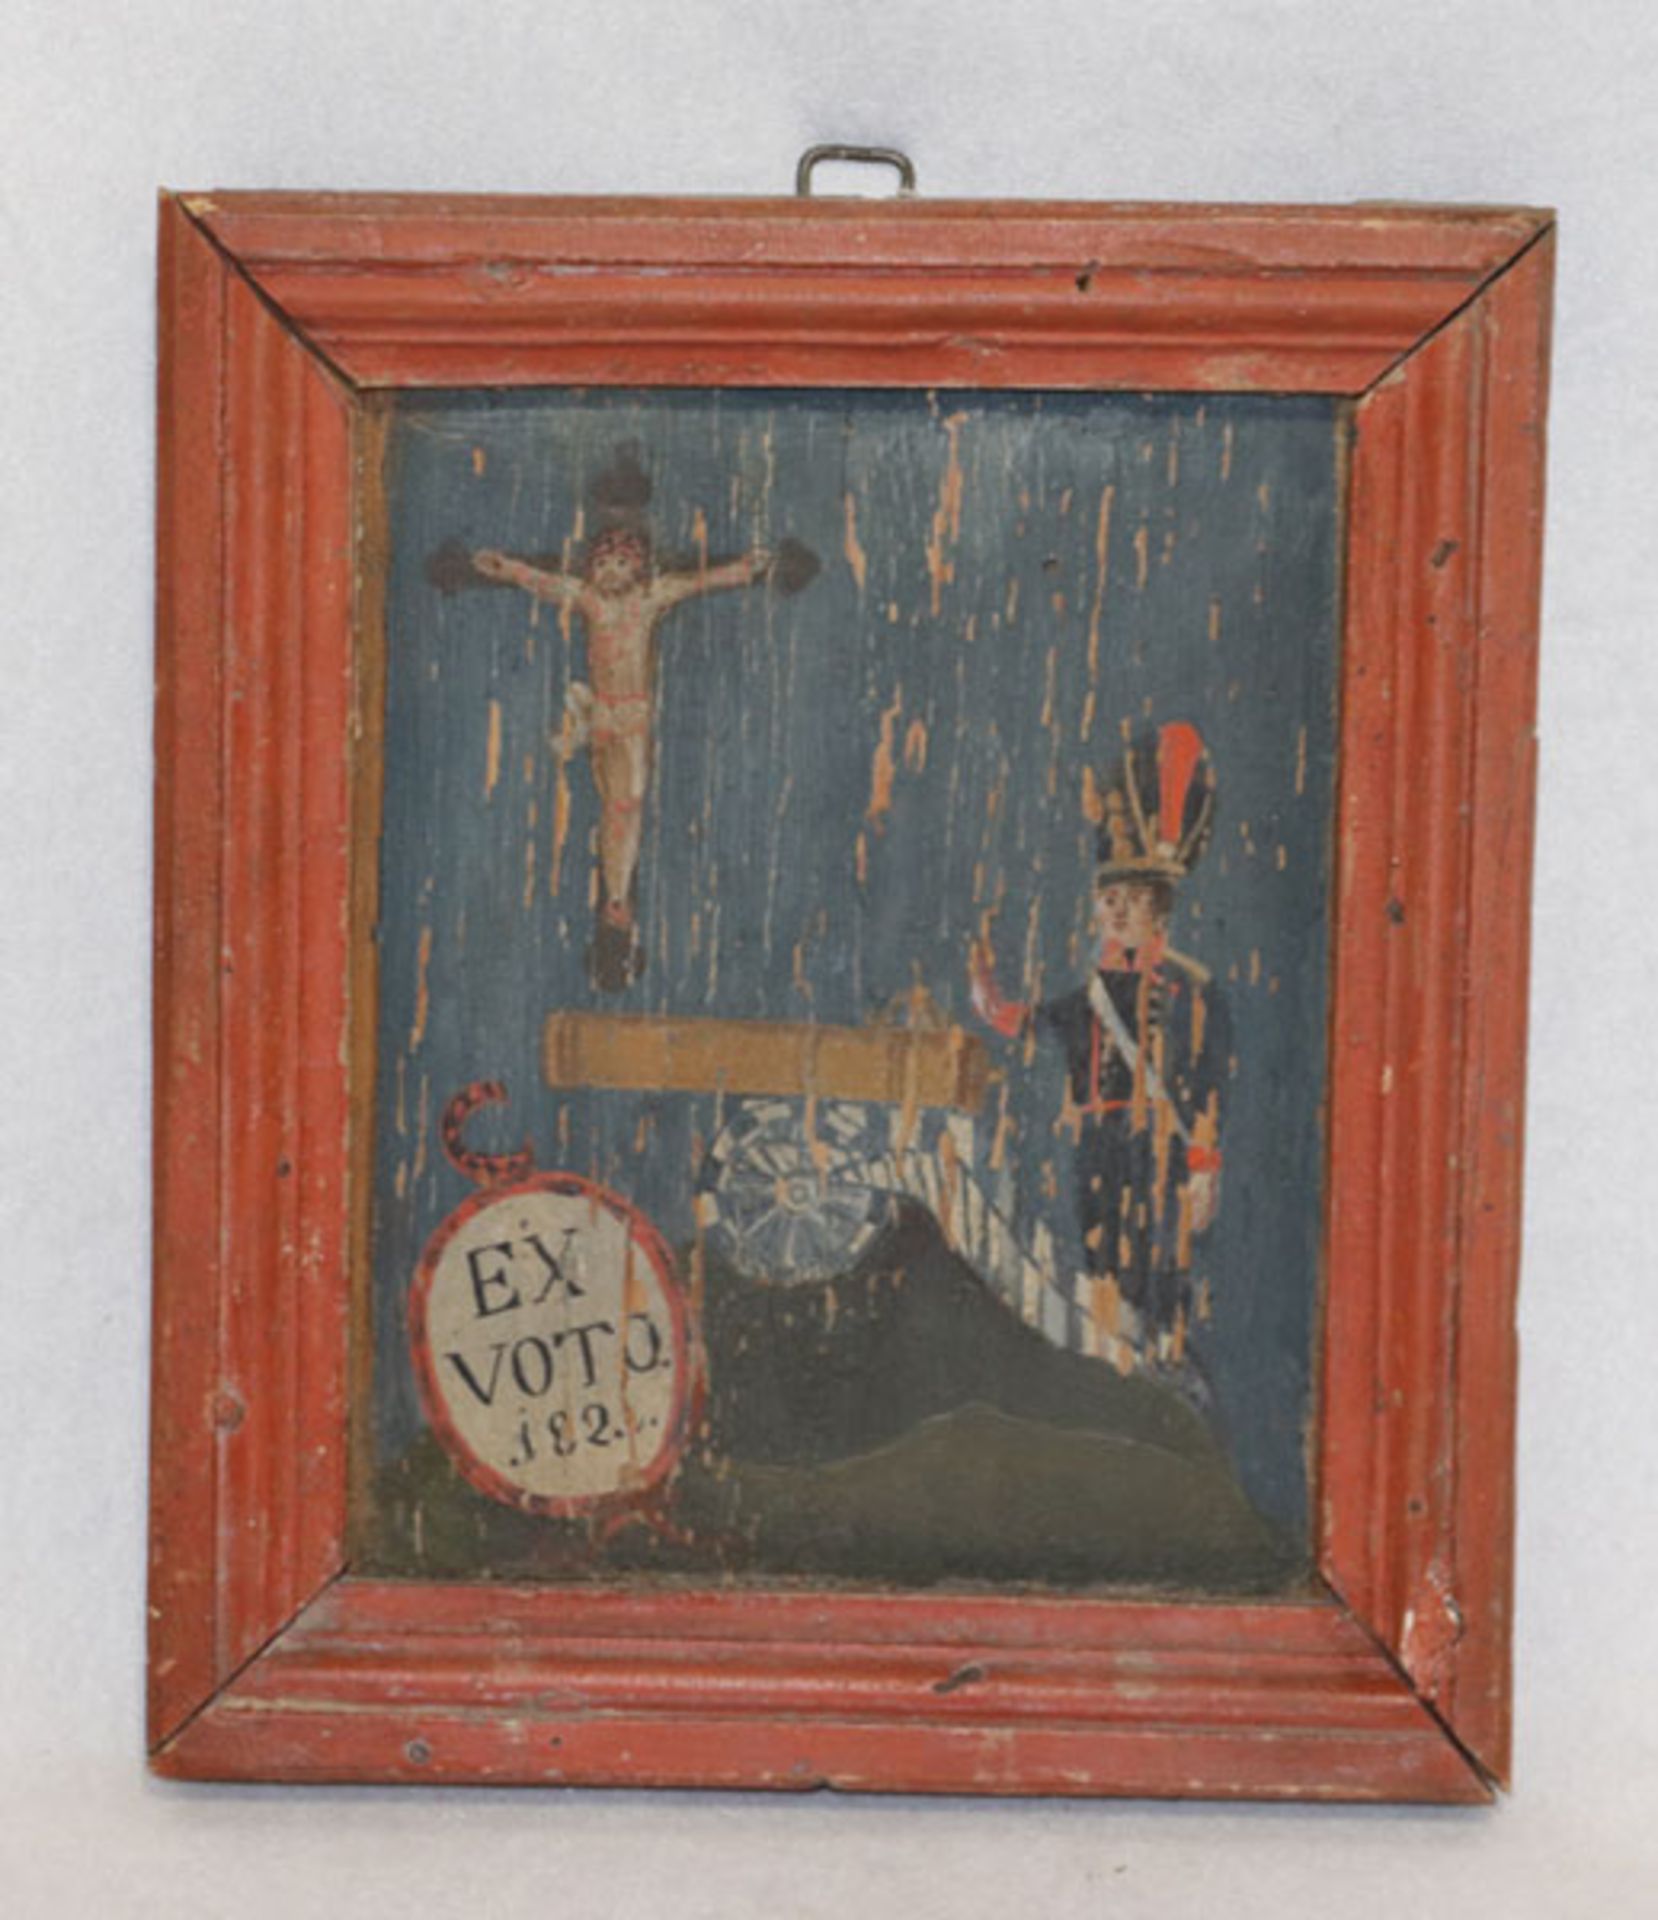 Votivtafel, EX Voto 1820, gerahmt, incl. Rahmen 23 cm x 20 cm, starke Altersspuren, Farbablösungen